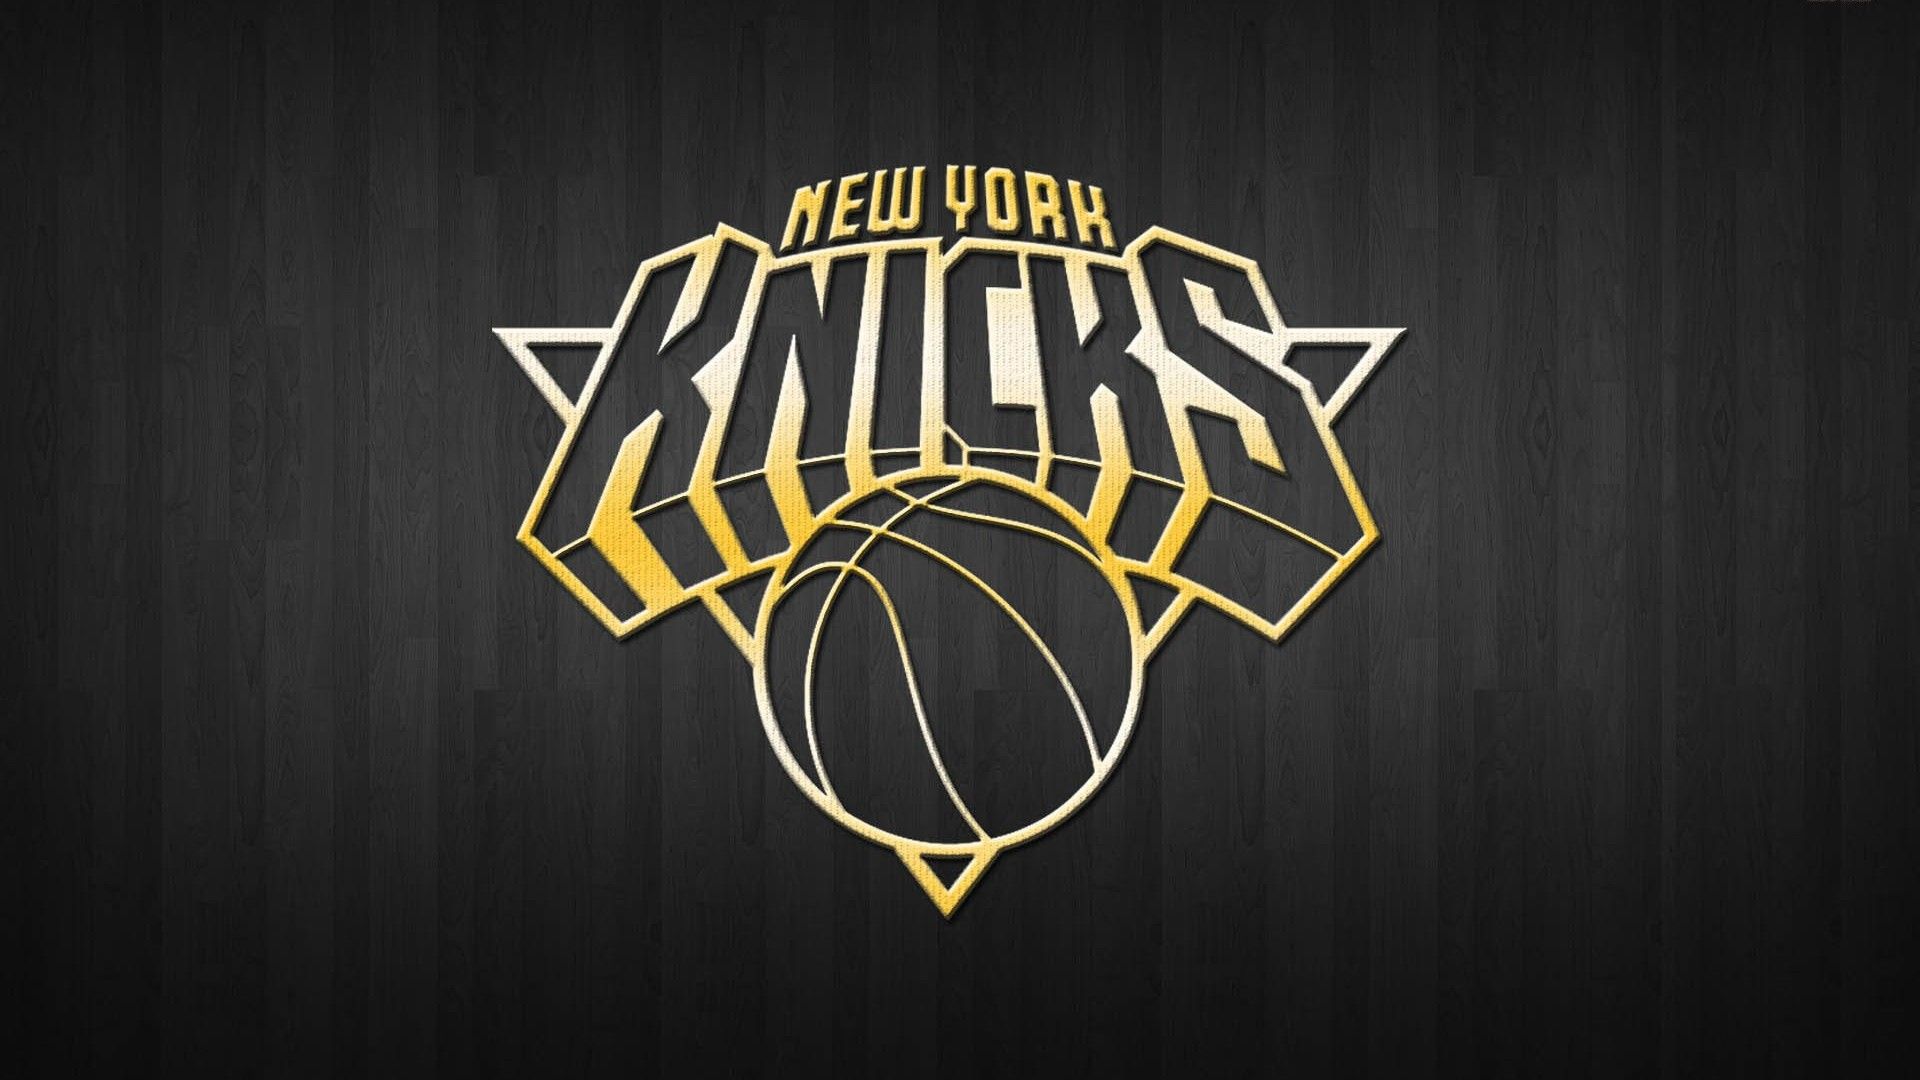 WALLPAPER DESKTOP NY KNICKS HD. New york knicks logo, Basketball wallpaper, Nba new york